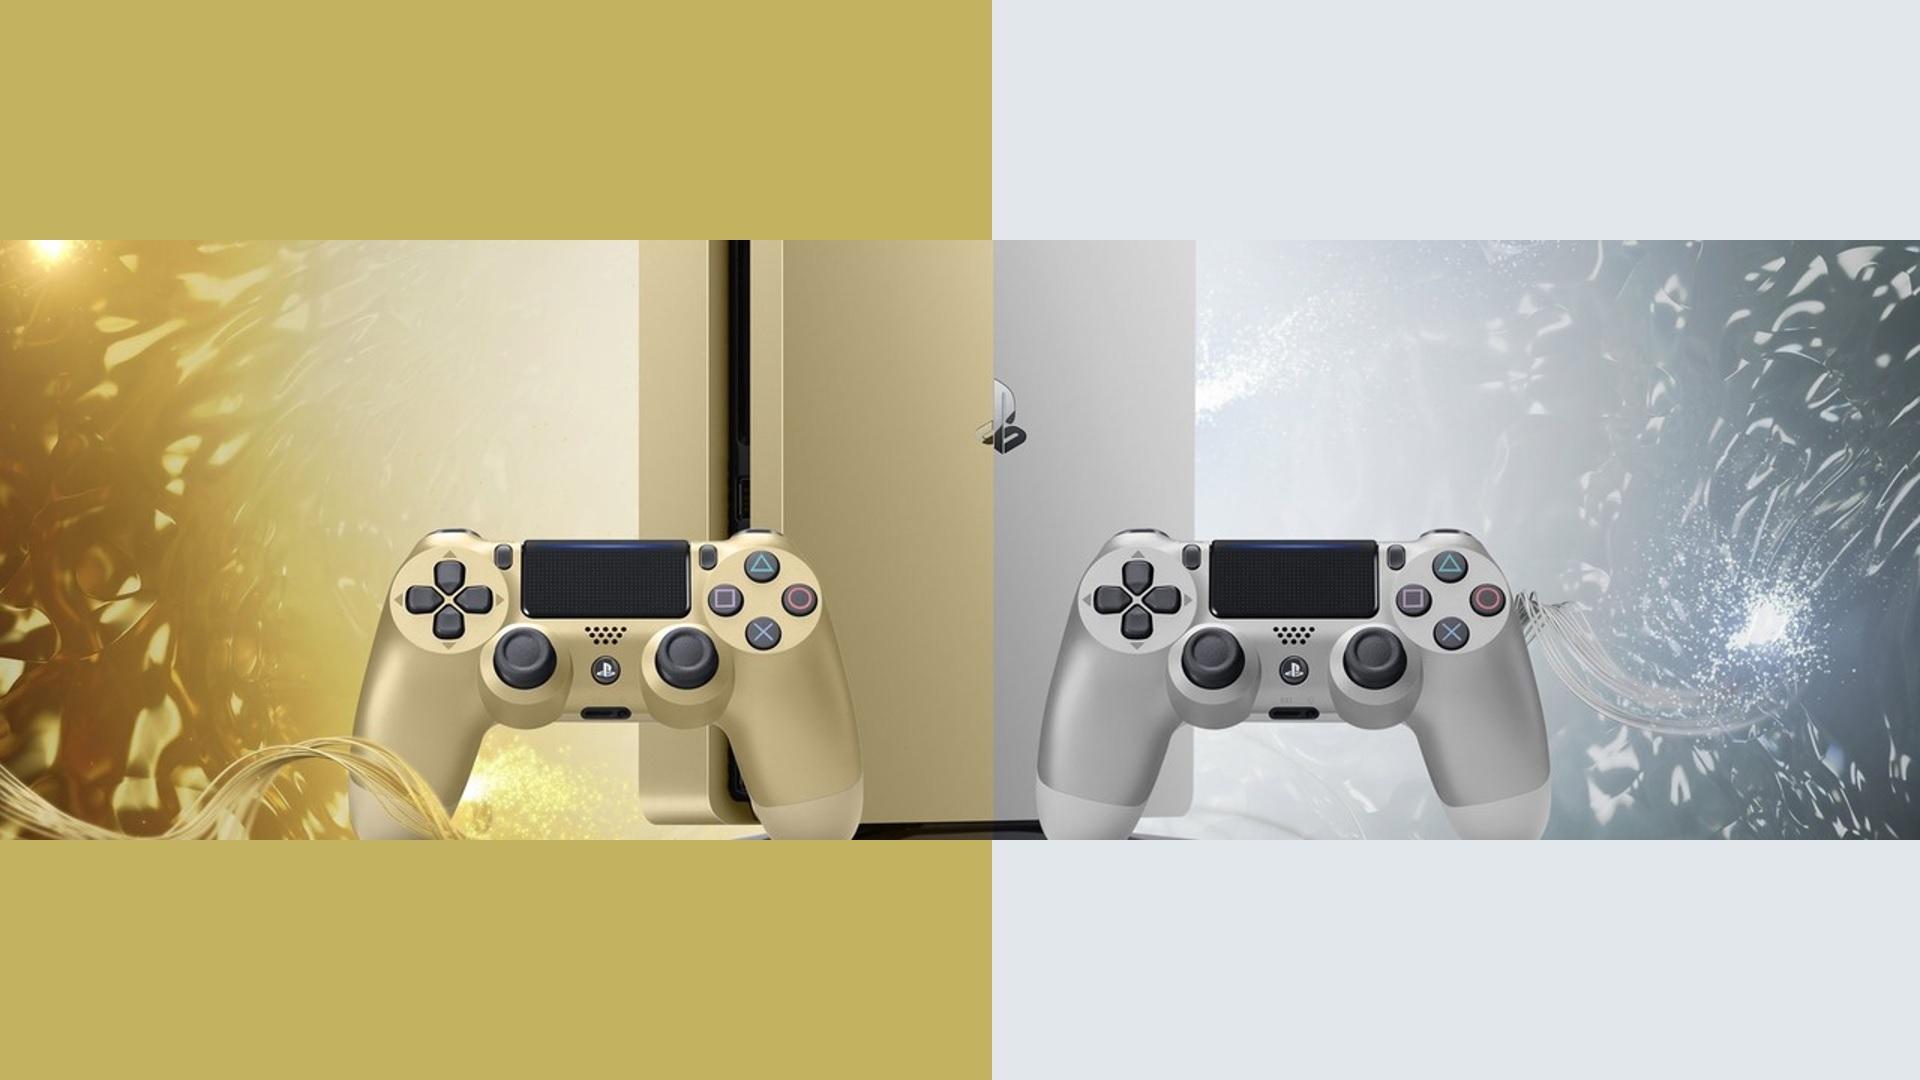 Sony เปิดขาย PS4 Limited Edition รุ่น Gold และ Silver พร้อมจัดโปรลดราคา